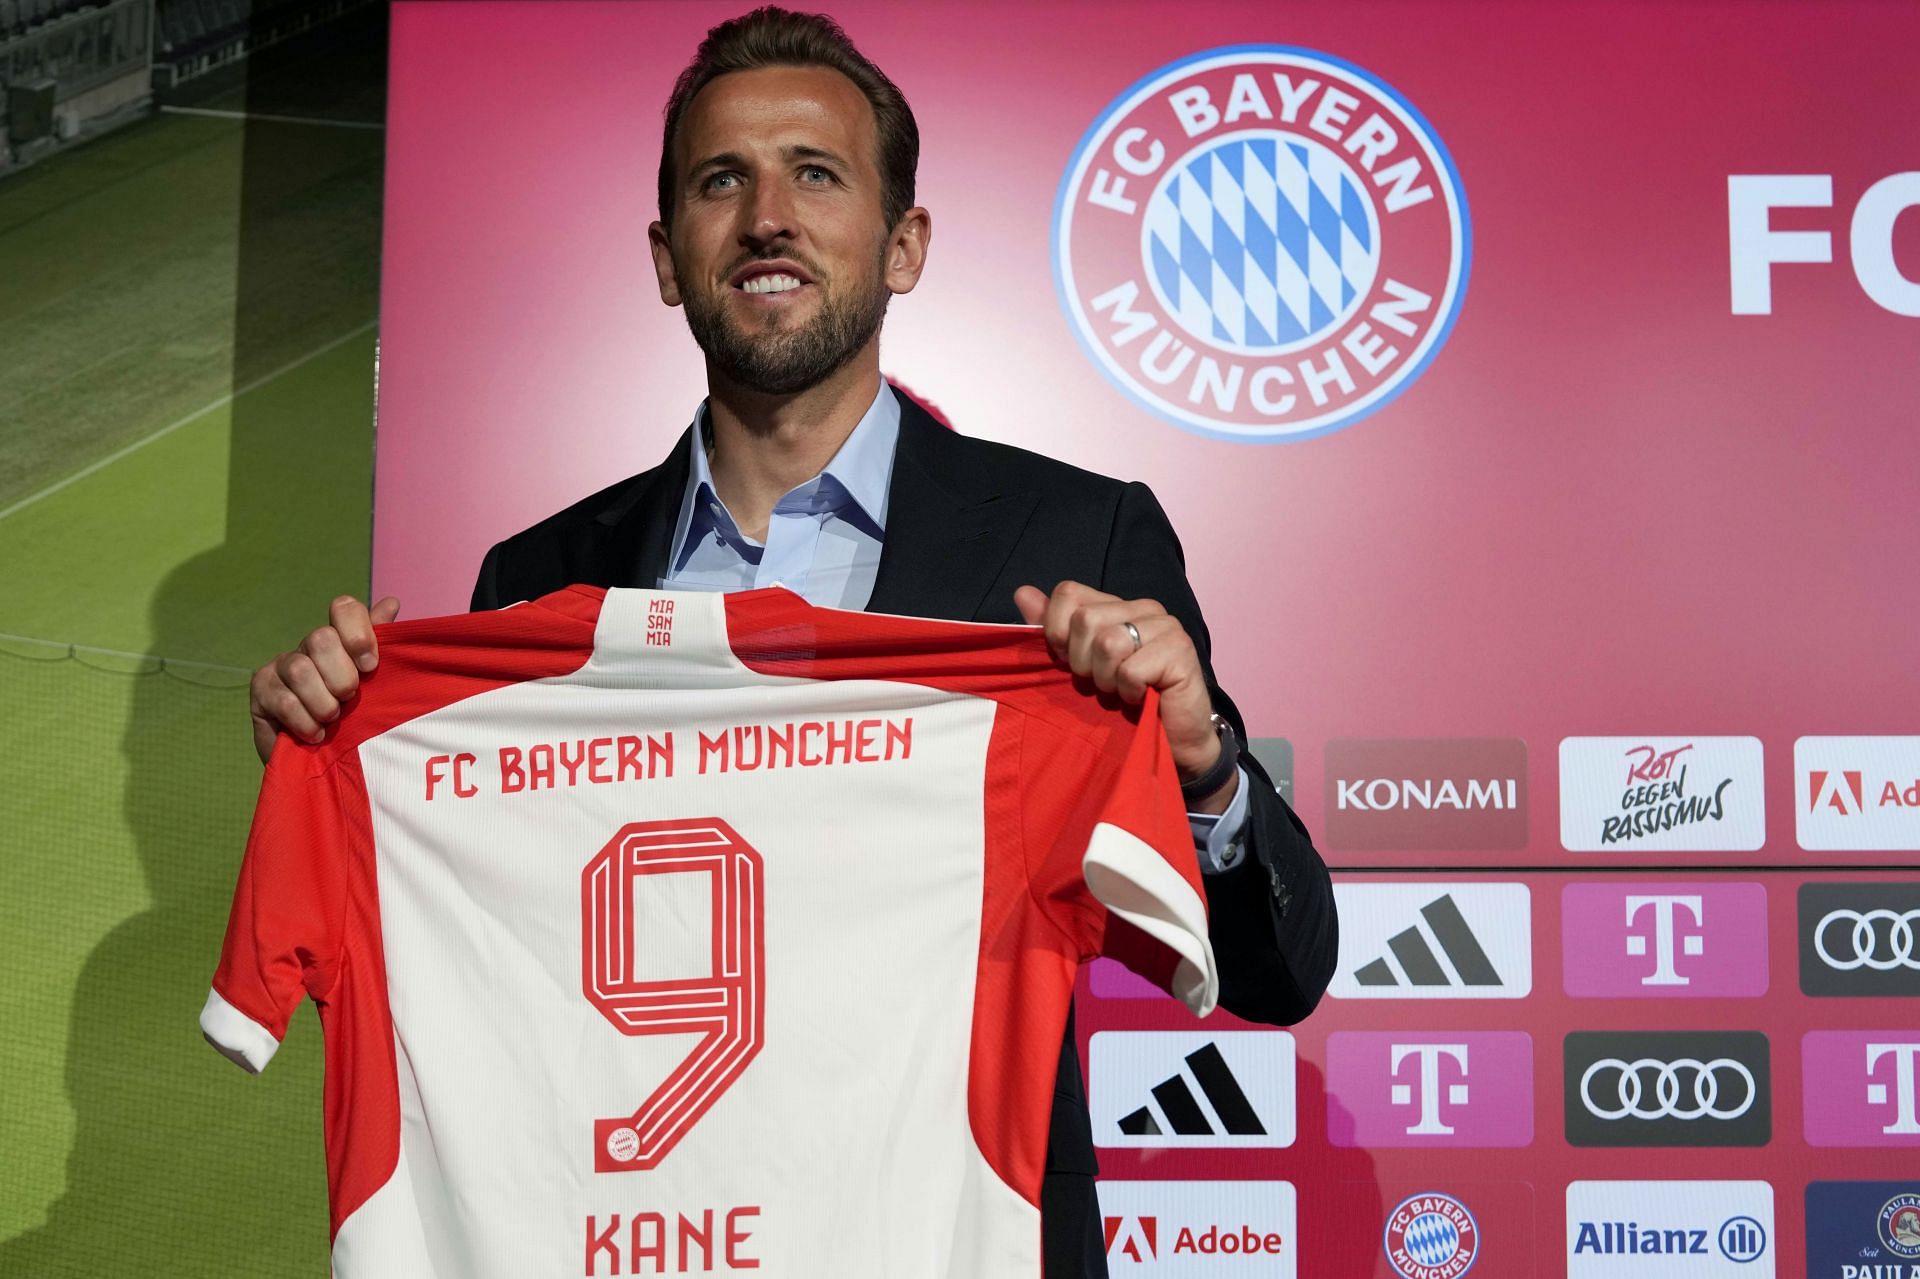 Kane moved to Bayern